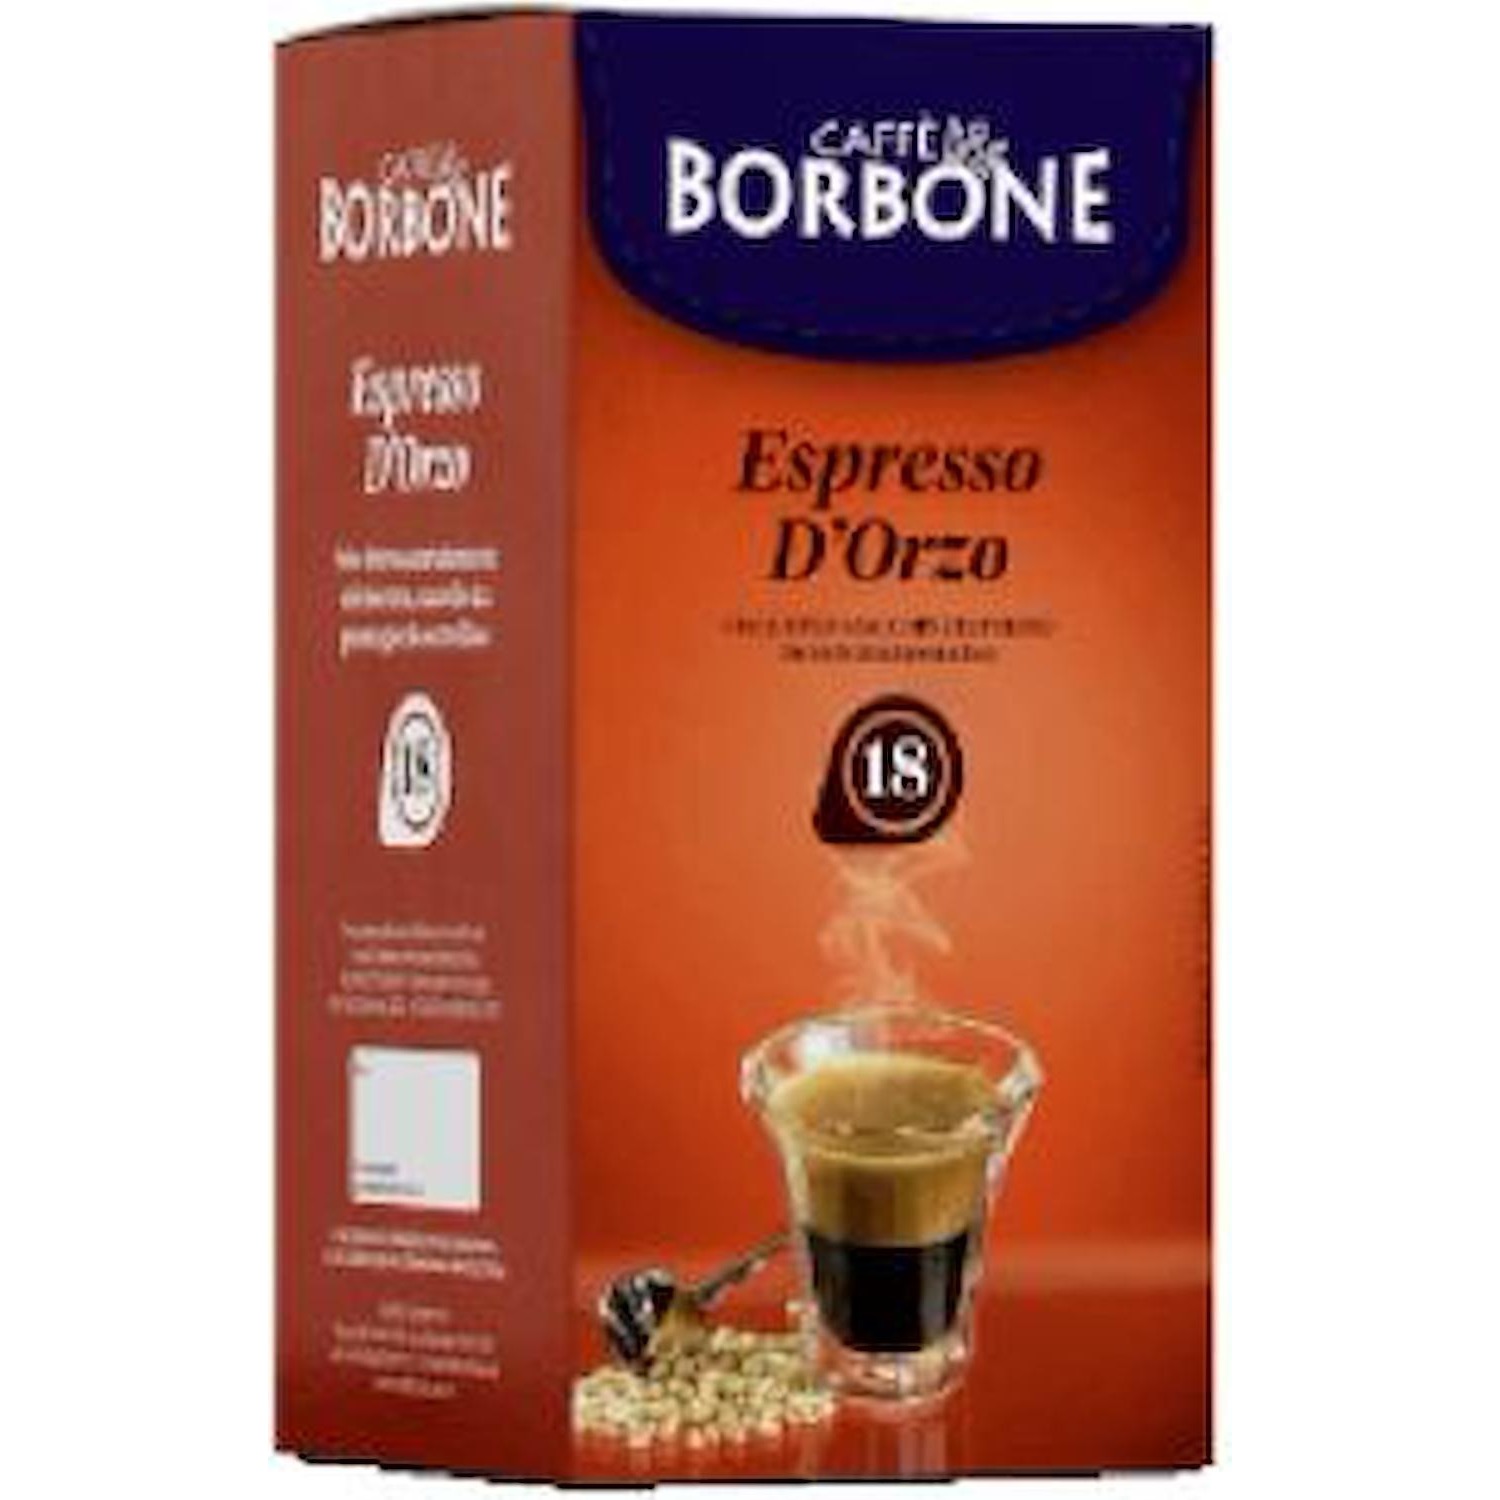 Immagine per Cialda Borbone Espresso d'Orzo 18pz da DIMOStore